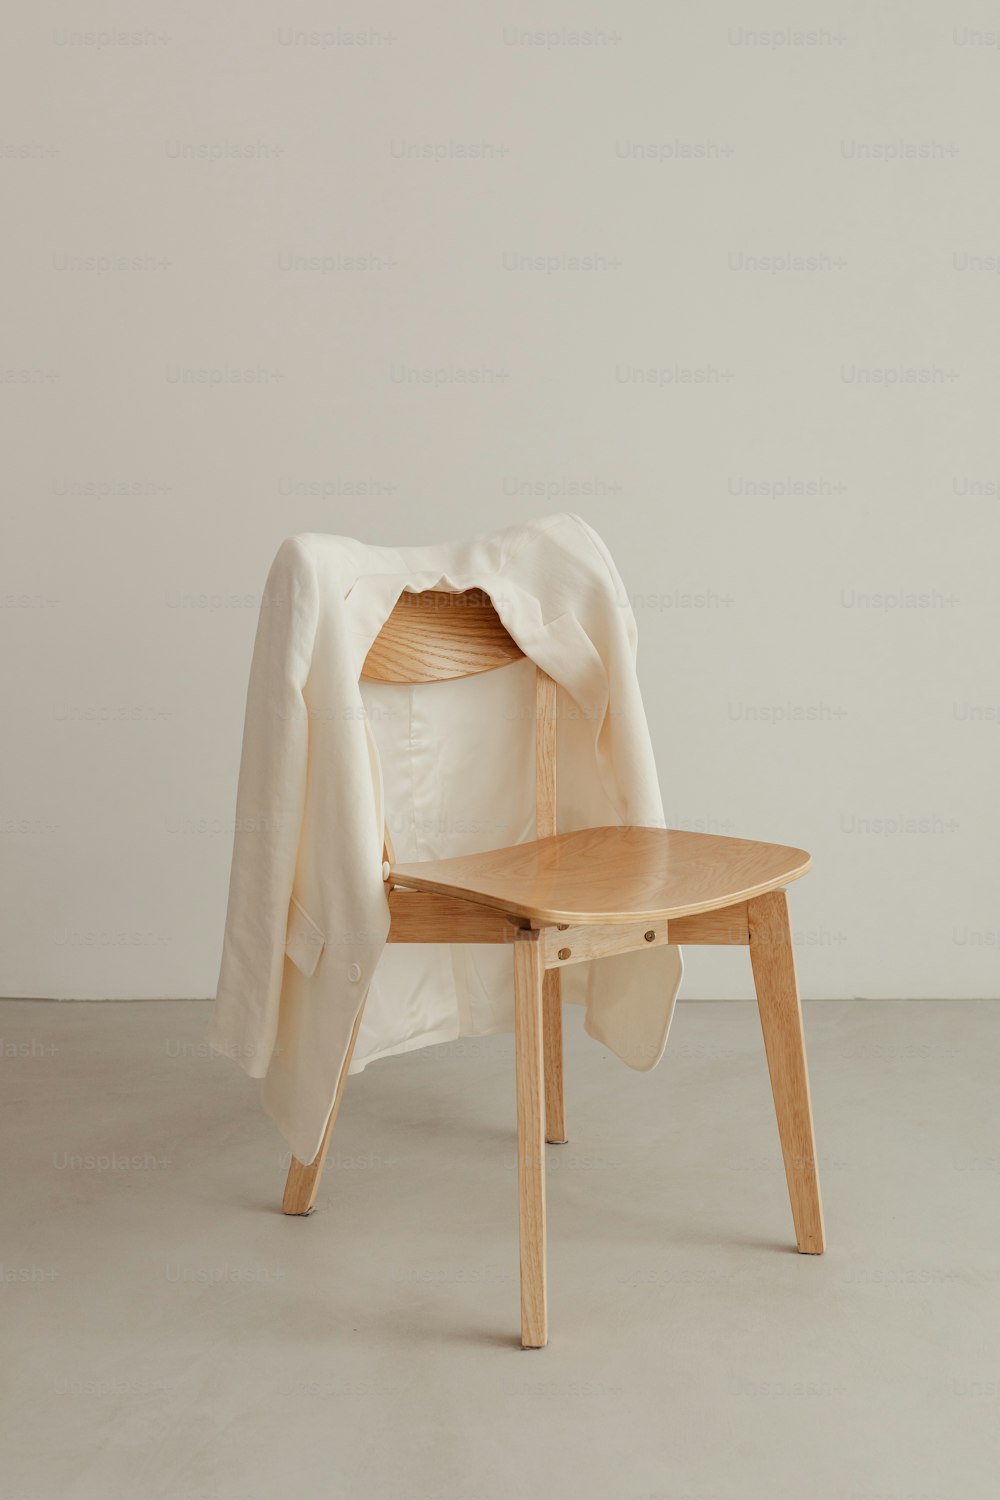 그 위에 흰색 담요가 달린 나무 의자